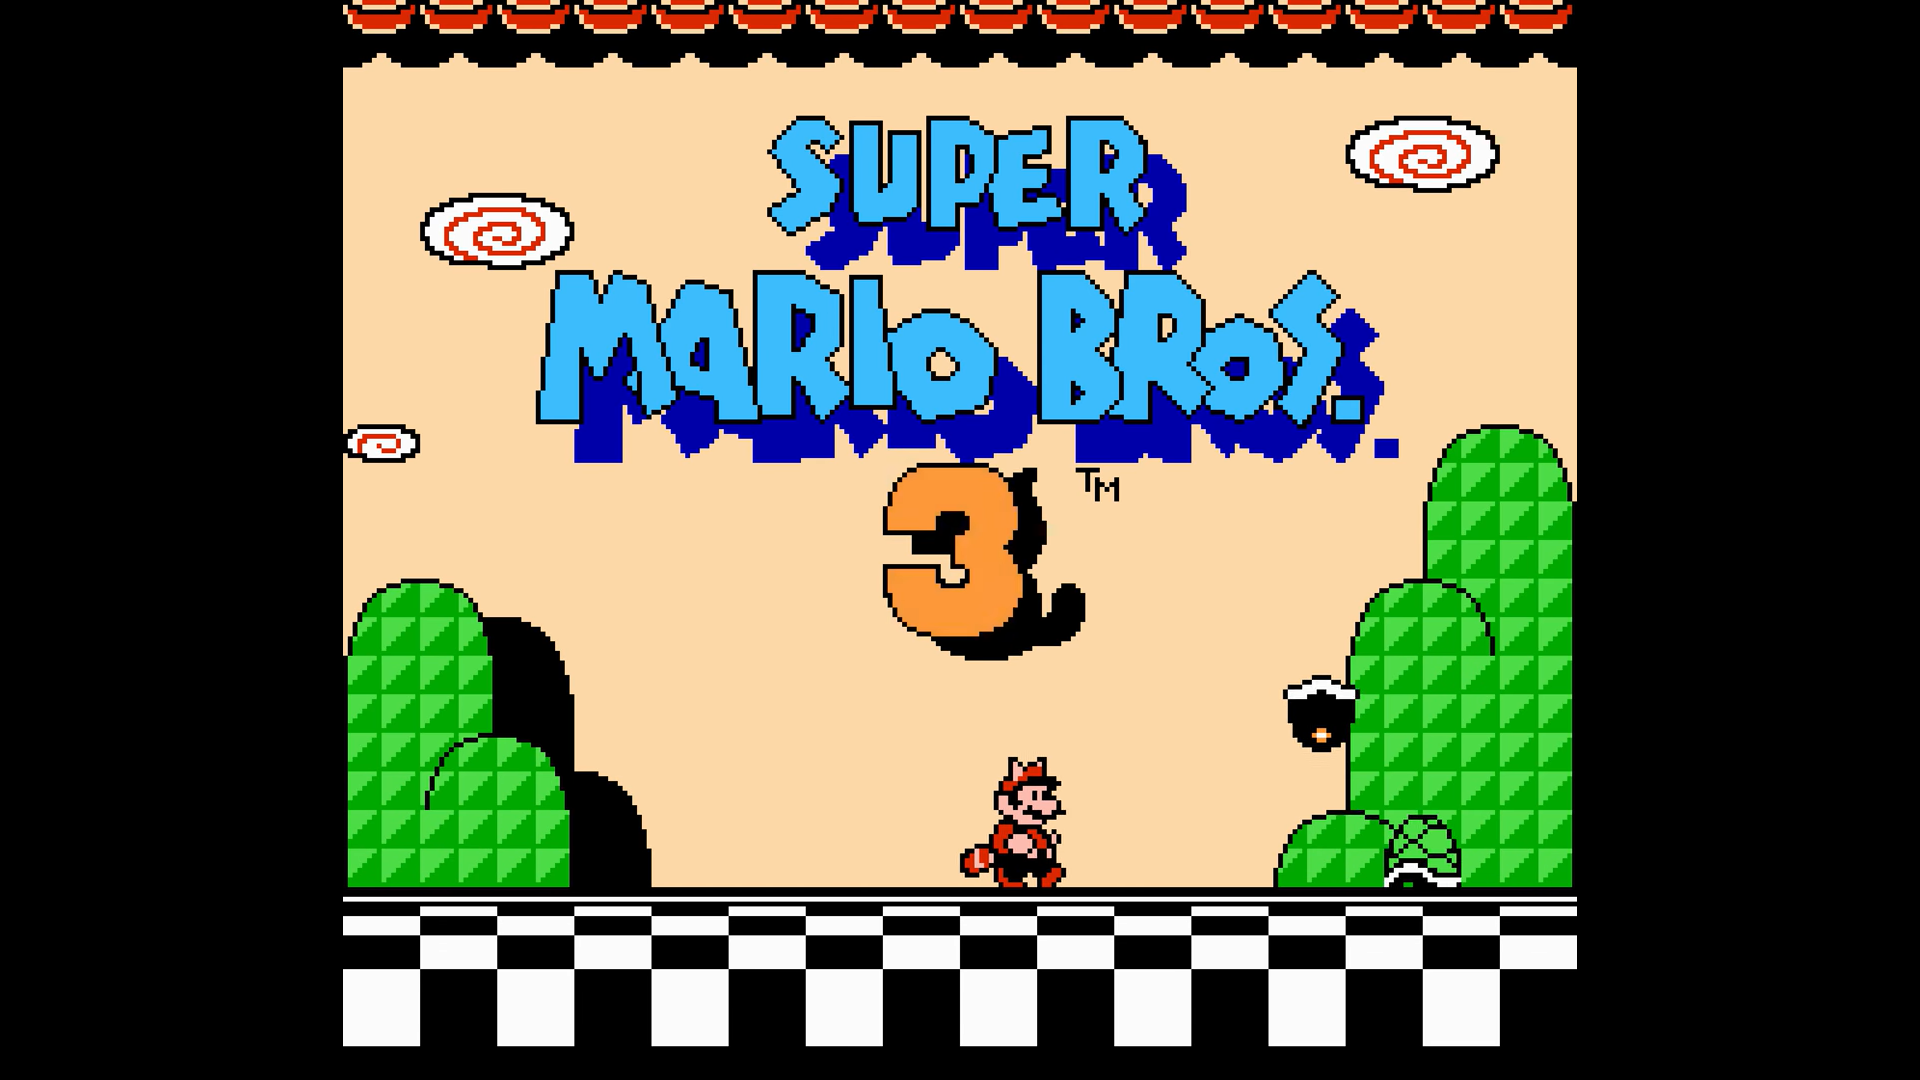 Super Mario Bros. 3 lansiran je u Japanu točno 30 godina, 23. listopada 1988. godine. Neovisno o tome koliko ste stari, Super Mario Bros. 3 je po našem skromnom mišljenju najbolja igra ikad napravljena. Ako ste odrasli u 90-ima, zasigurno ste bar jednom odigrali partiju tog nastavka, a za slučaj da niste, Super Mario Bros 3. je nastavak koji odmah asocira na franšizu.